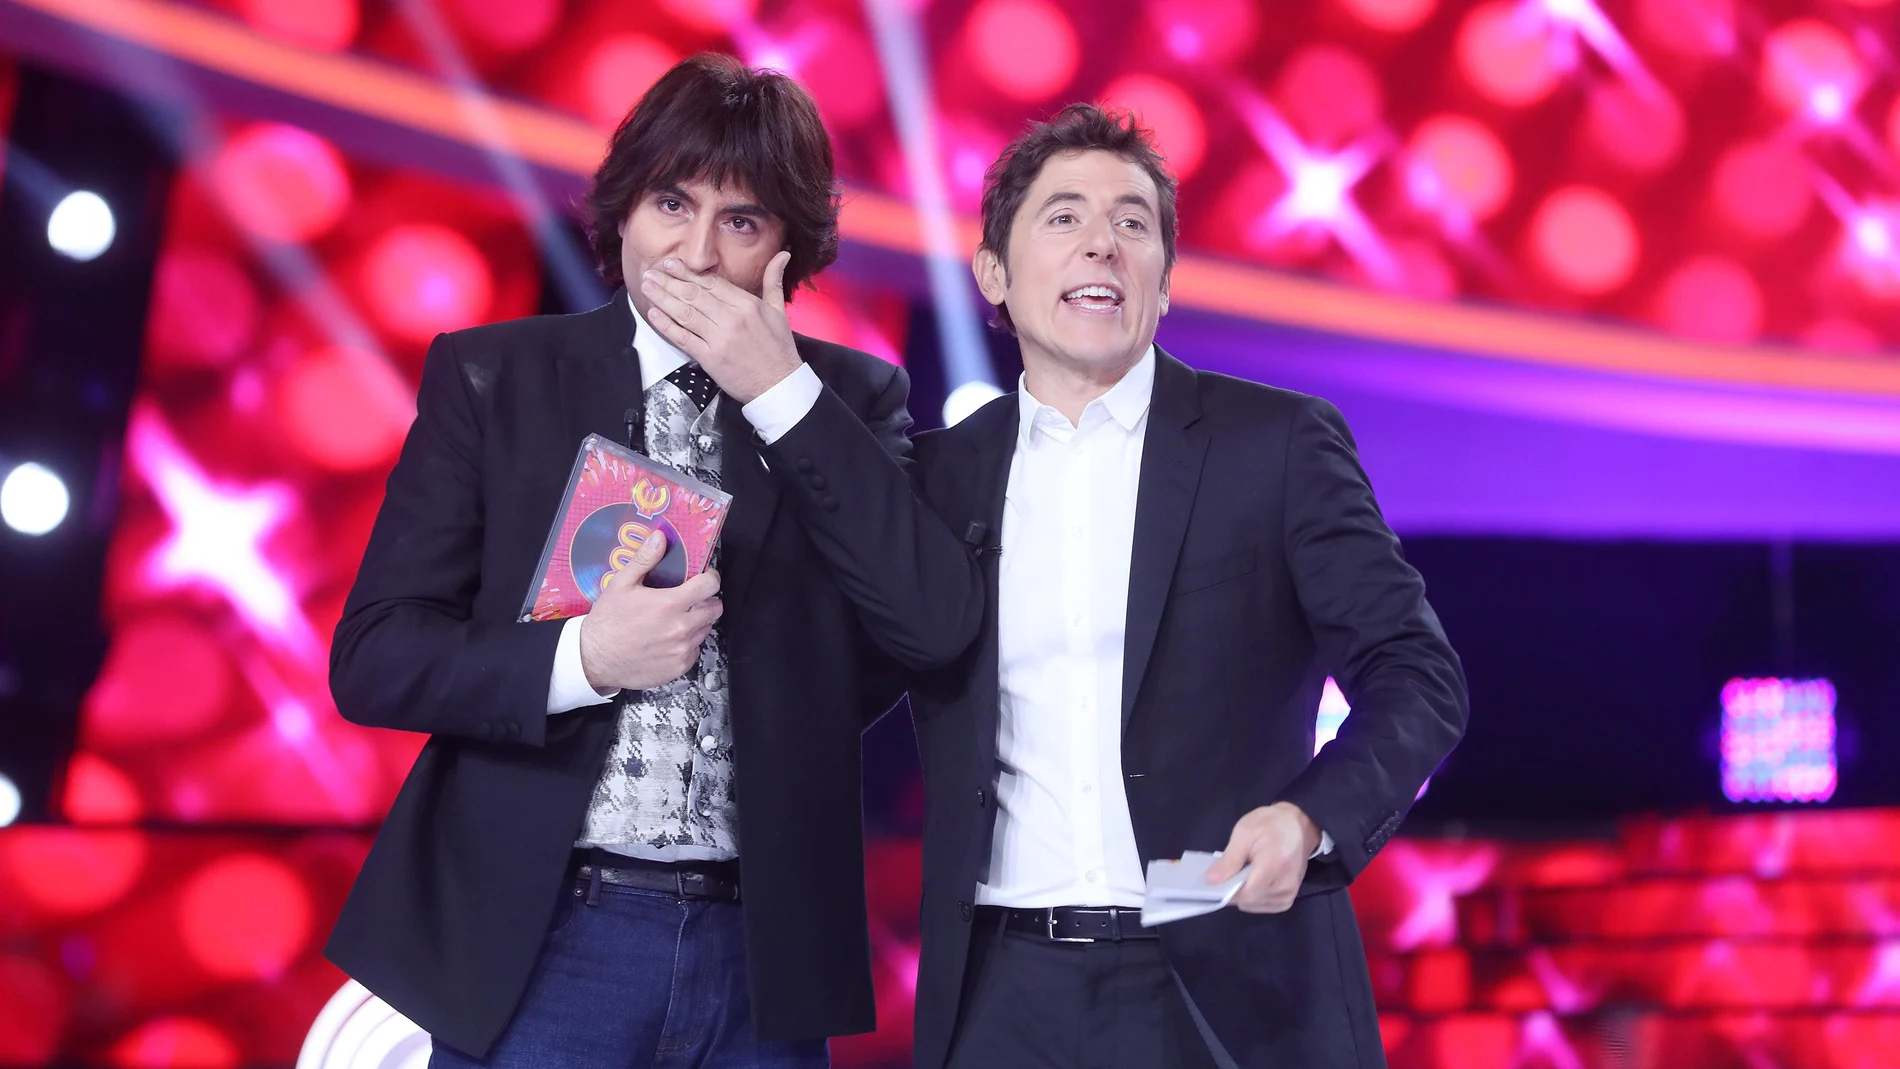  Raúl Pérez, muy emocionado, se hace con el triunfo en el ‘Especial Eurovisión’ de ‘Tu cara me suena’